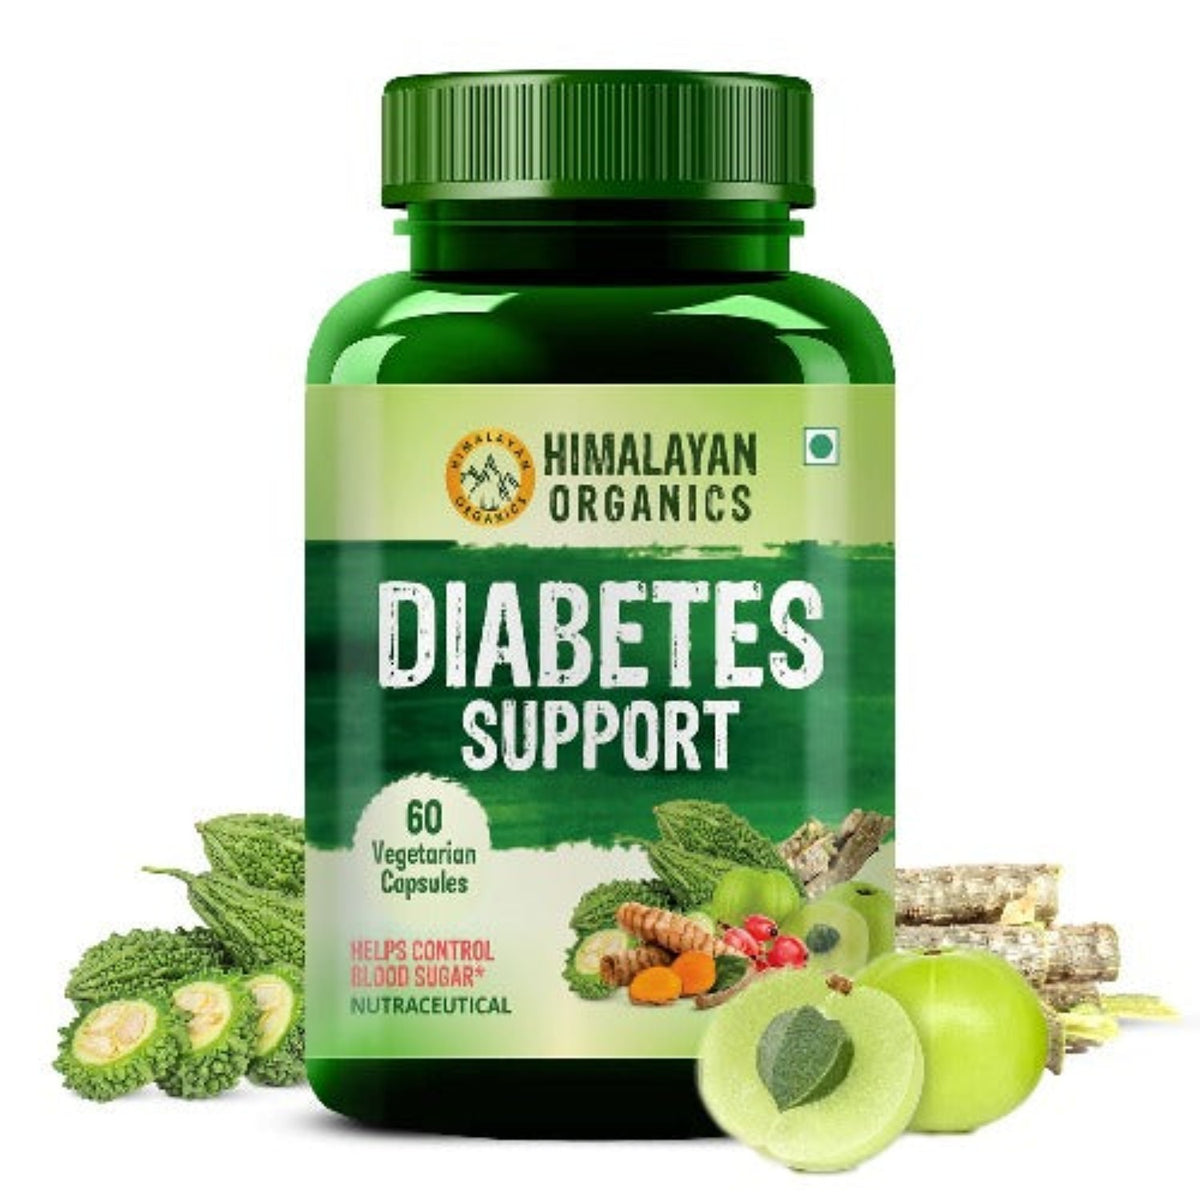 Himalayan Organics Diabetes-Unterstützungspräparat hilft bei der Kontrolle des Blutzuckerspiegels, 100 % vegetarisch (60 Kapseln)